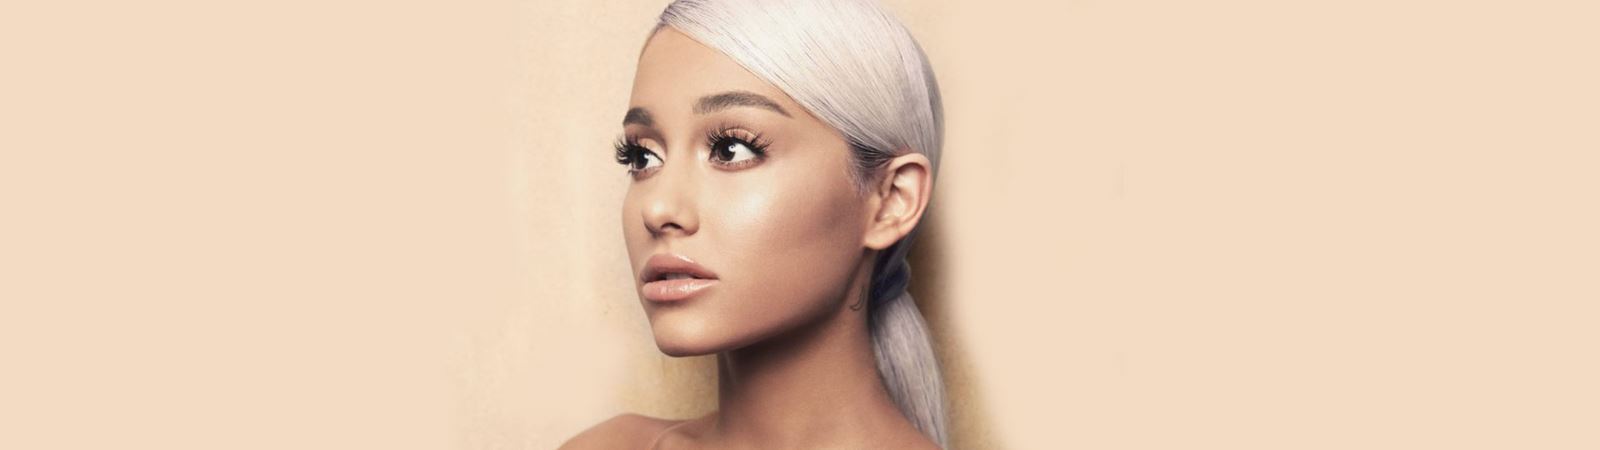 Ariana Grande lança música nova